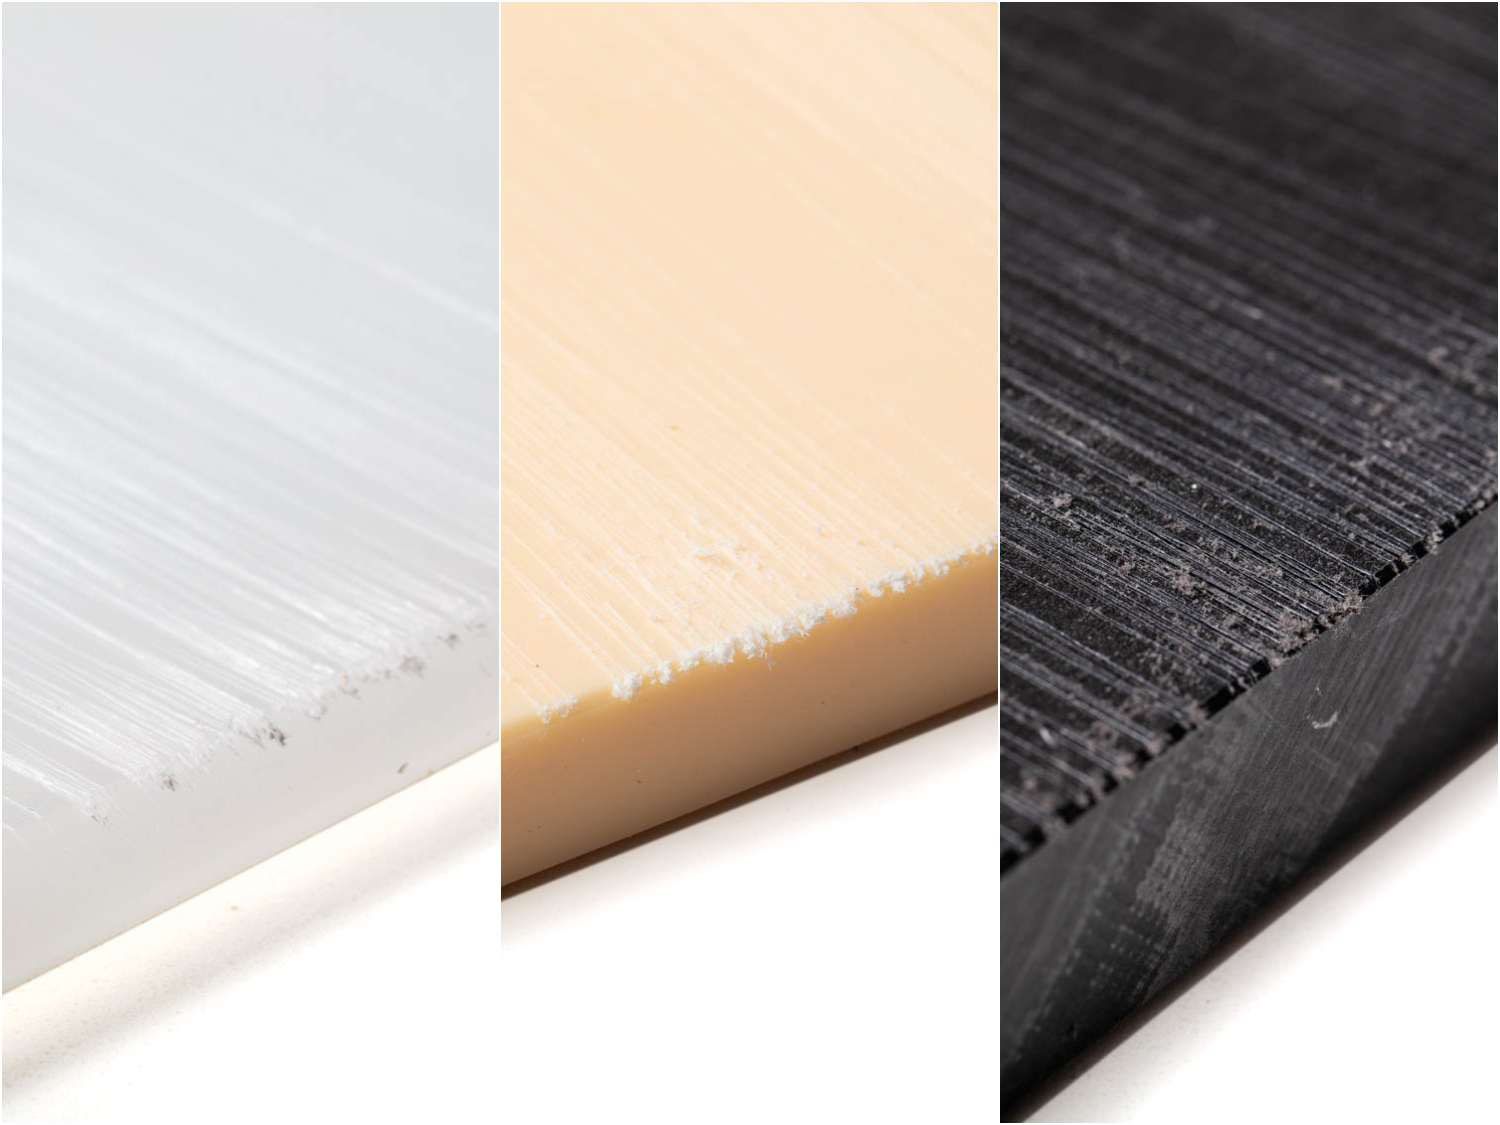 哪种塑料切菜板材质最耐用?这个合成镜头显示了刀对三个例子的伤害。